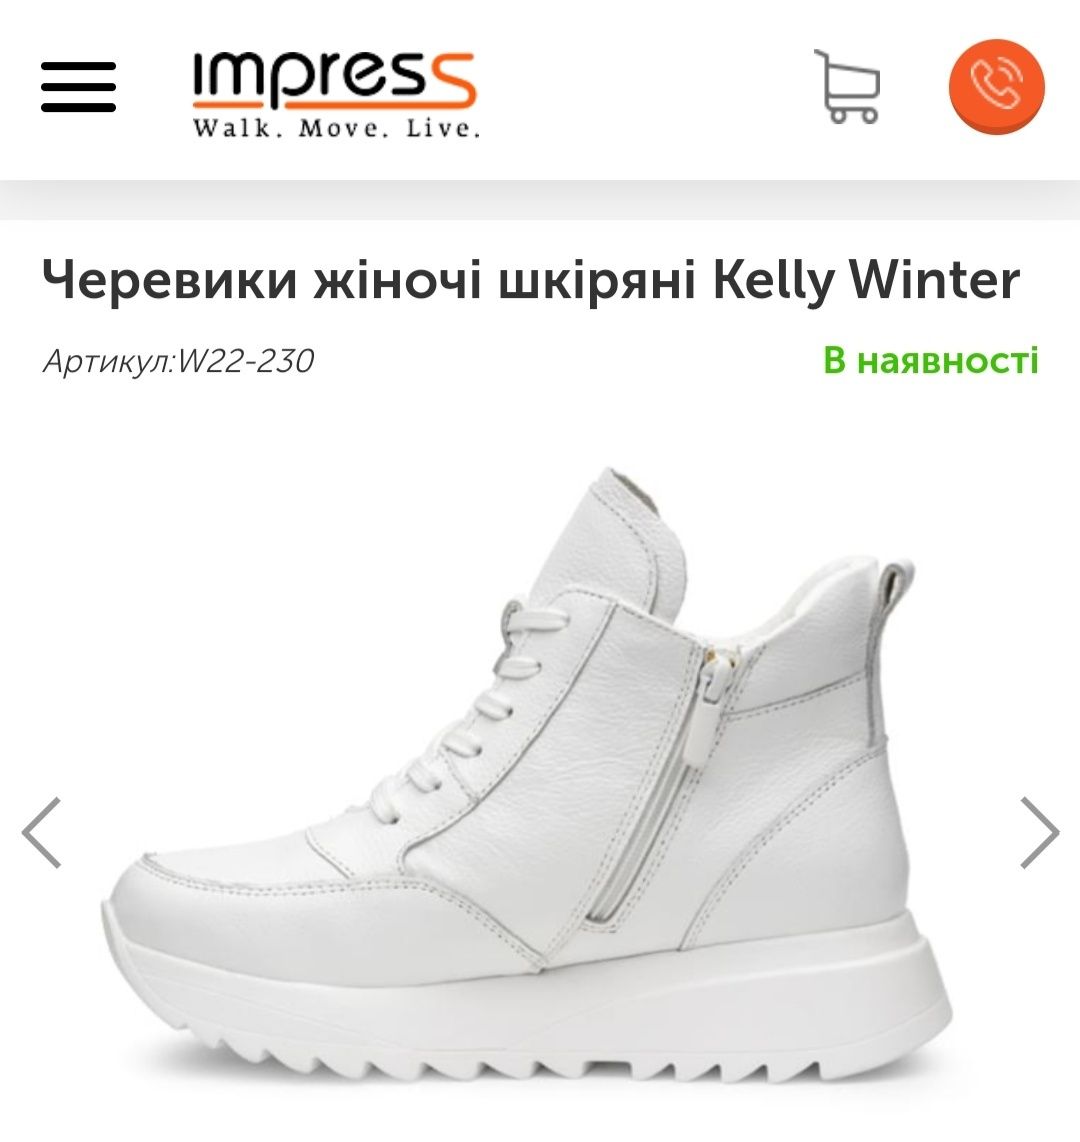 Зимові шкіряні черевики Kelly Winter від Impress